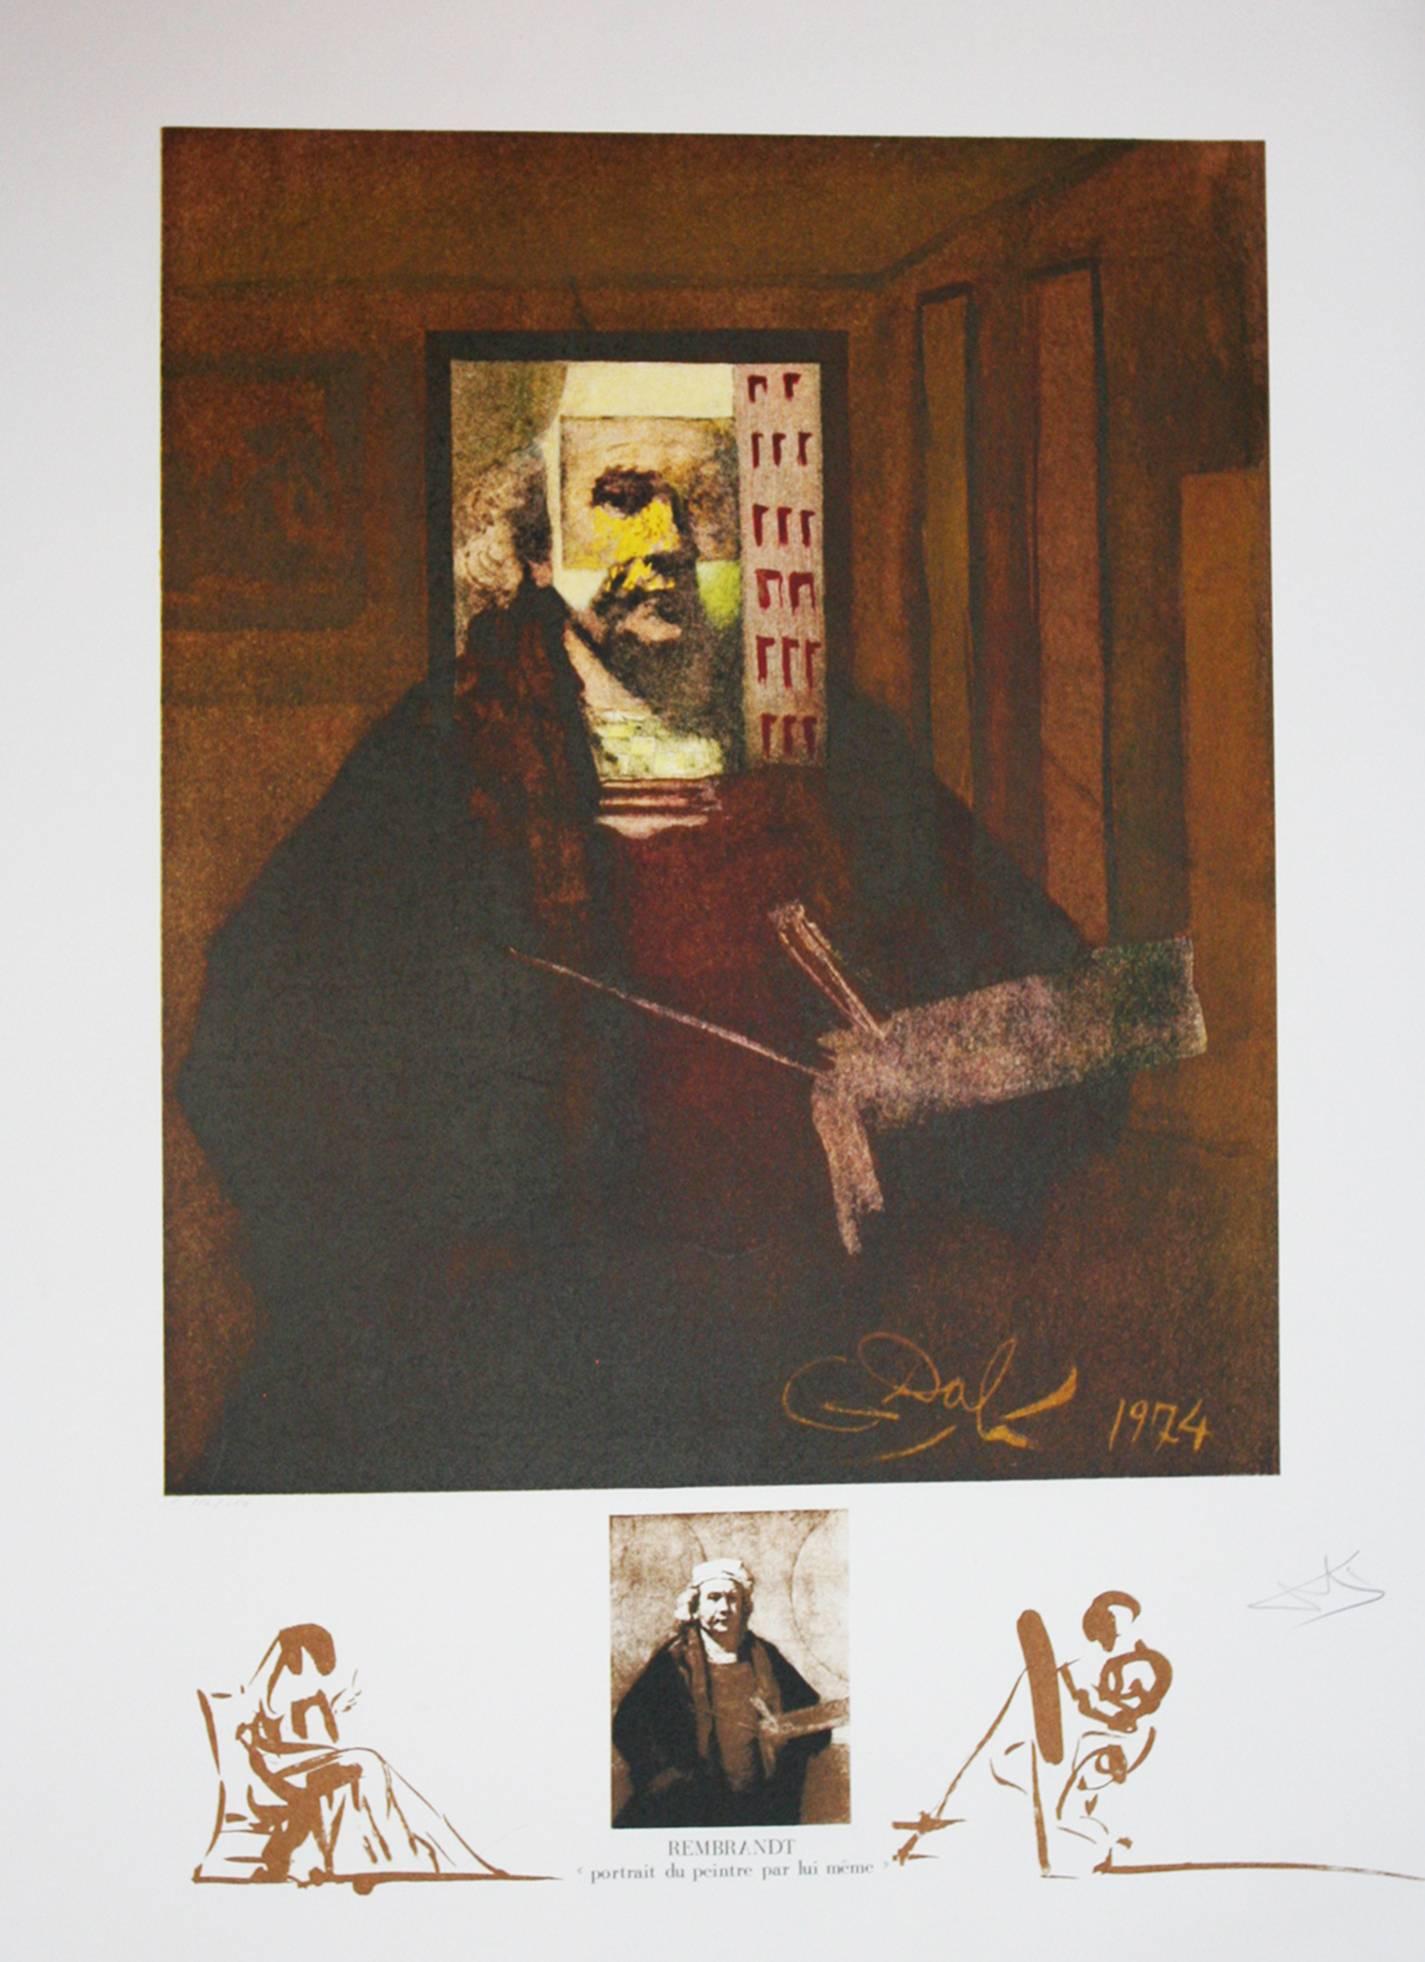 Rembrandt Portrait Du Peintre Par Lui-Meme original lithograph 1974